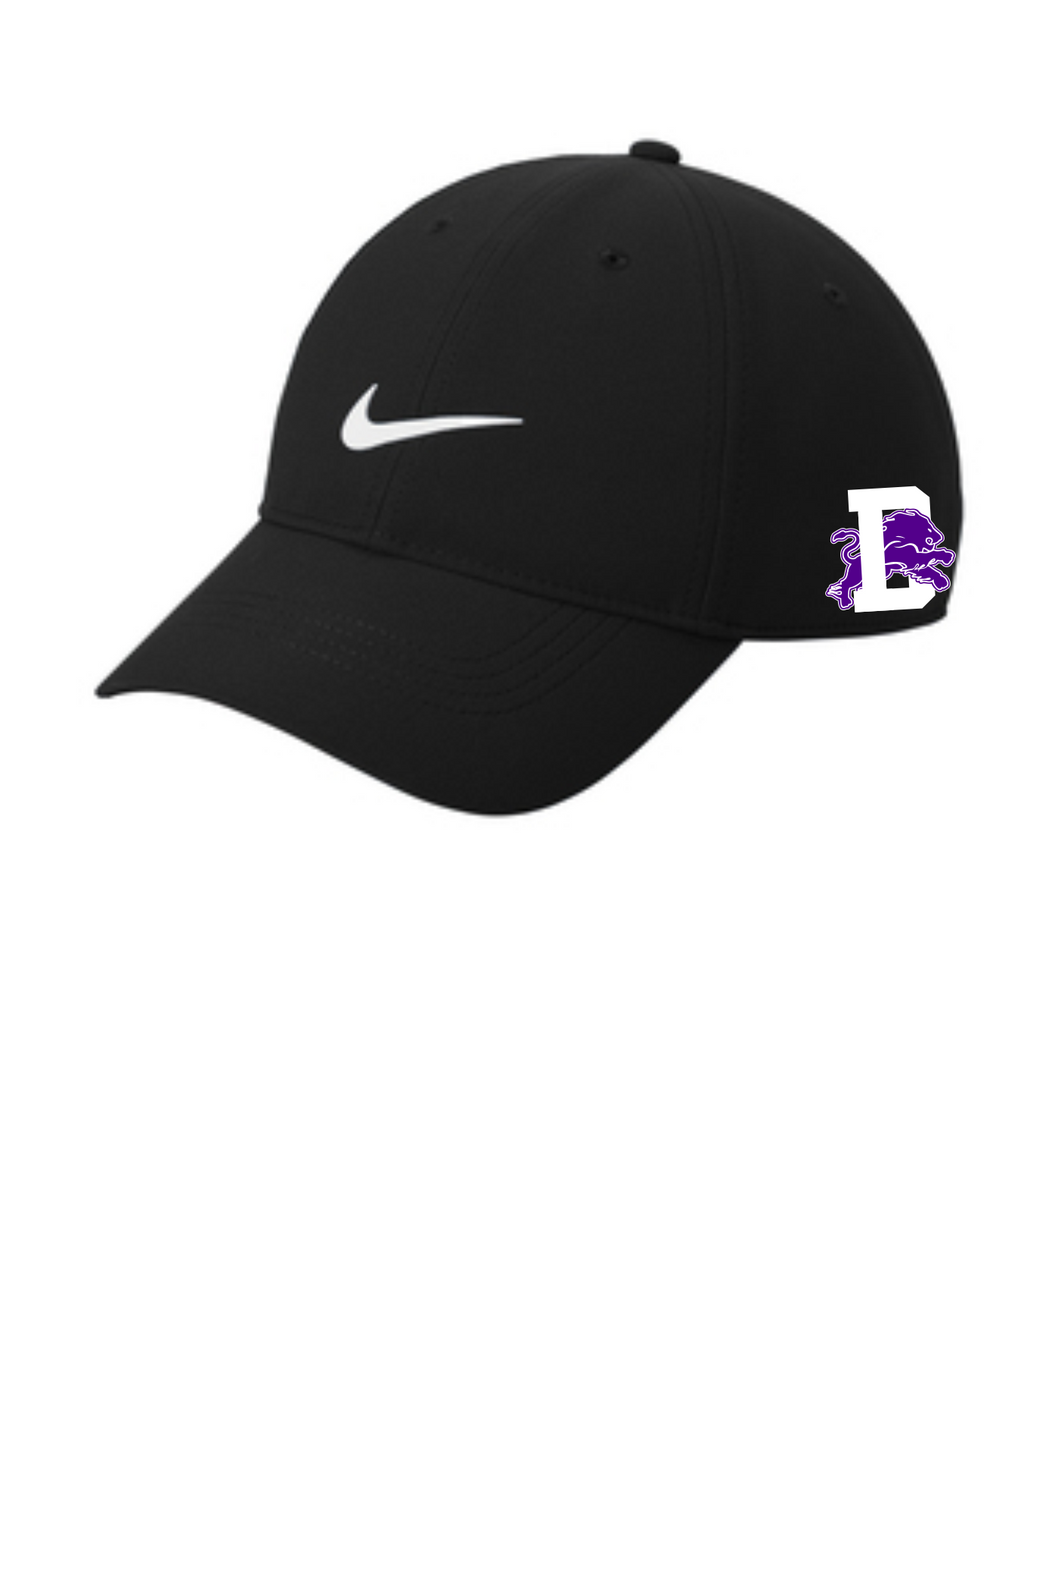 Dryden Golf Nike Hat Black